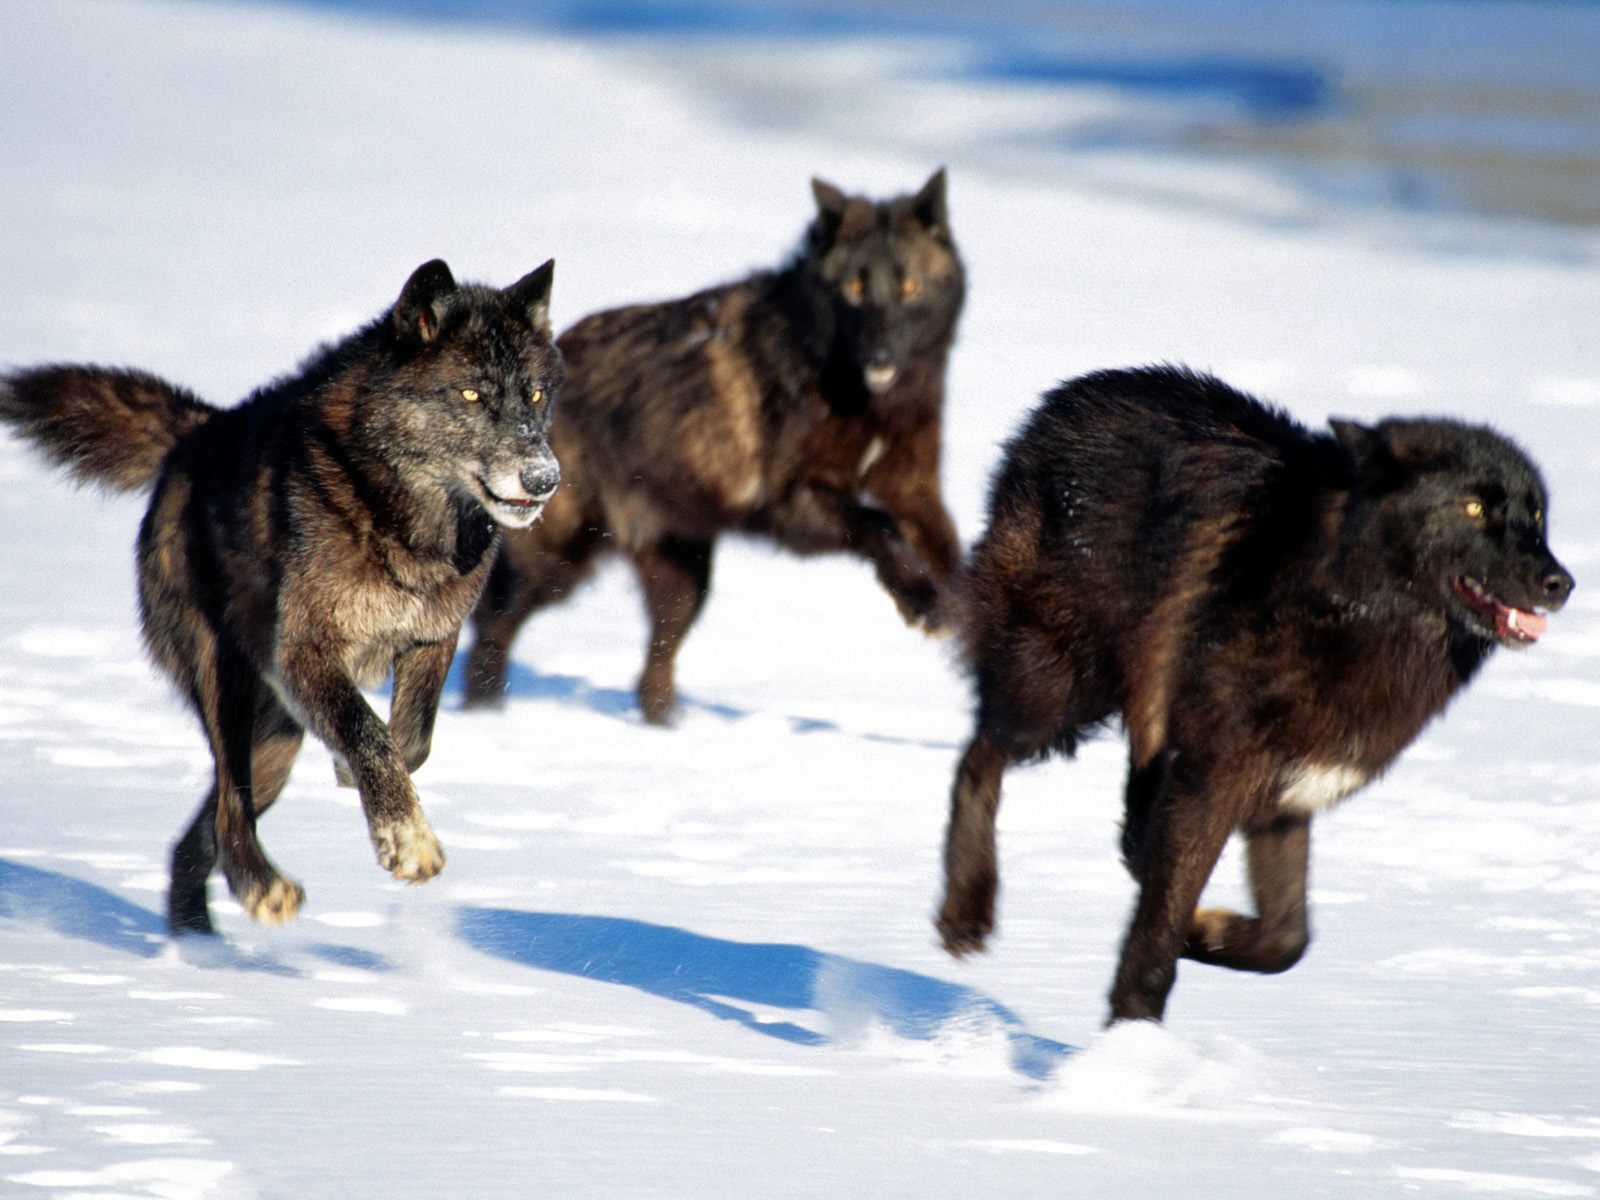 Wolf Wars